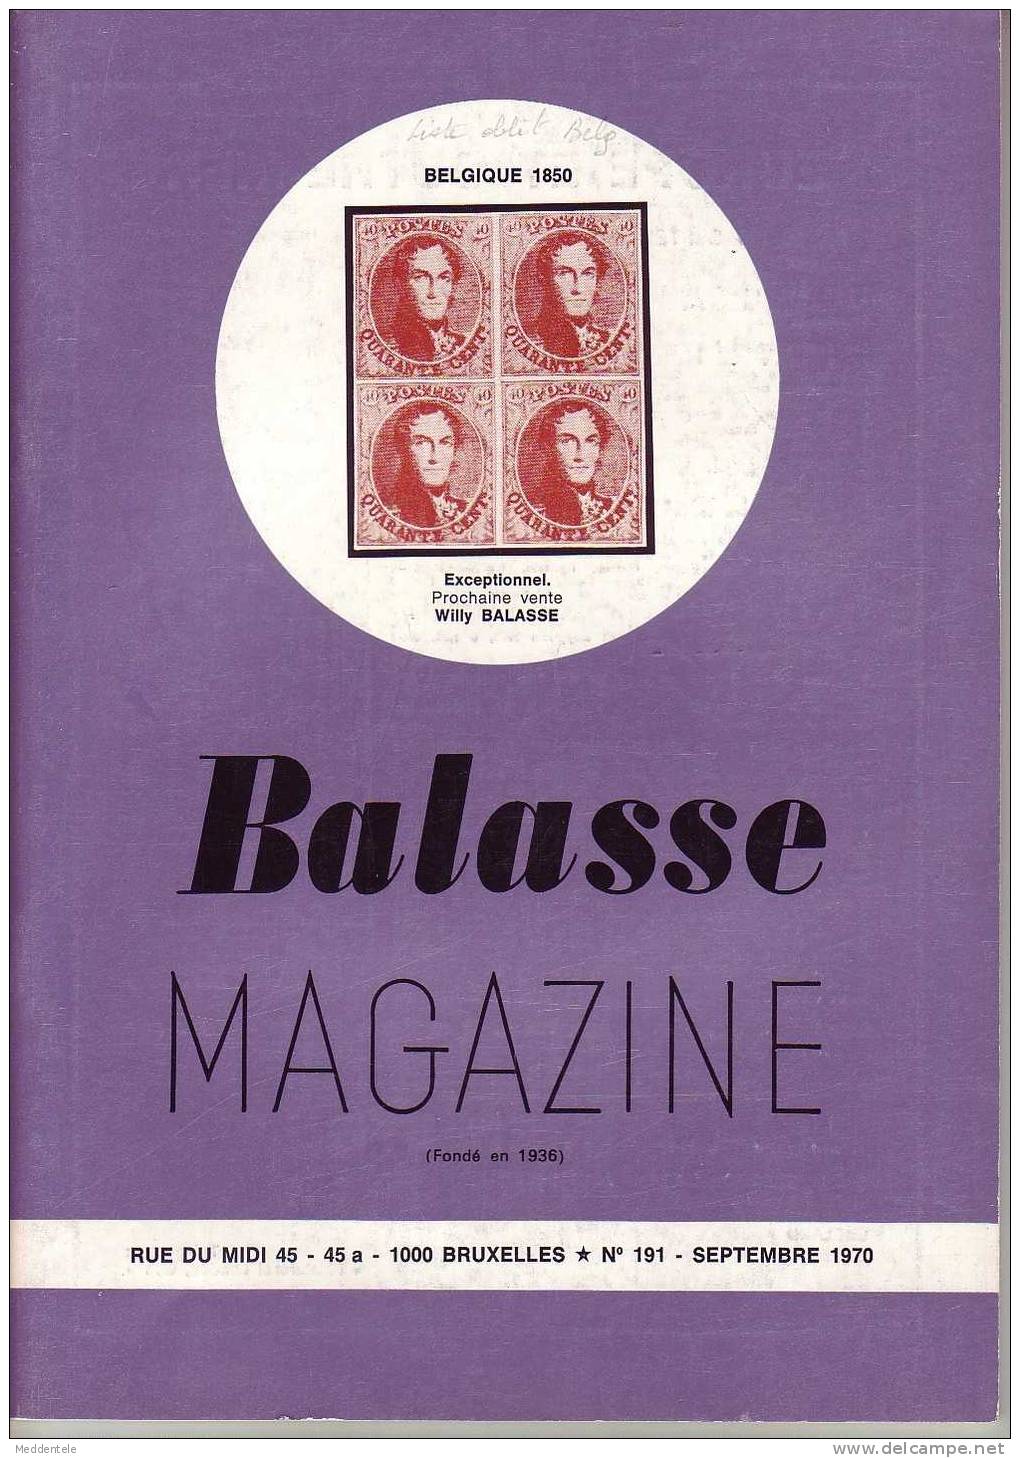 BALASSE MAGAZINE N° 191 - Français (àpd. 1941)